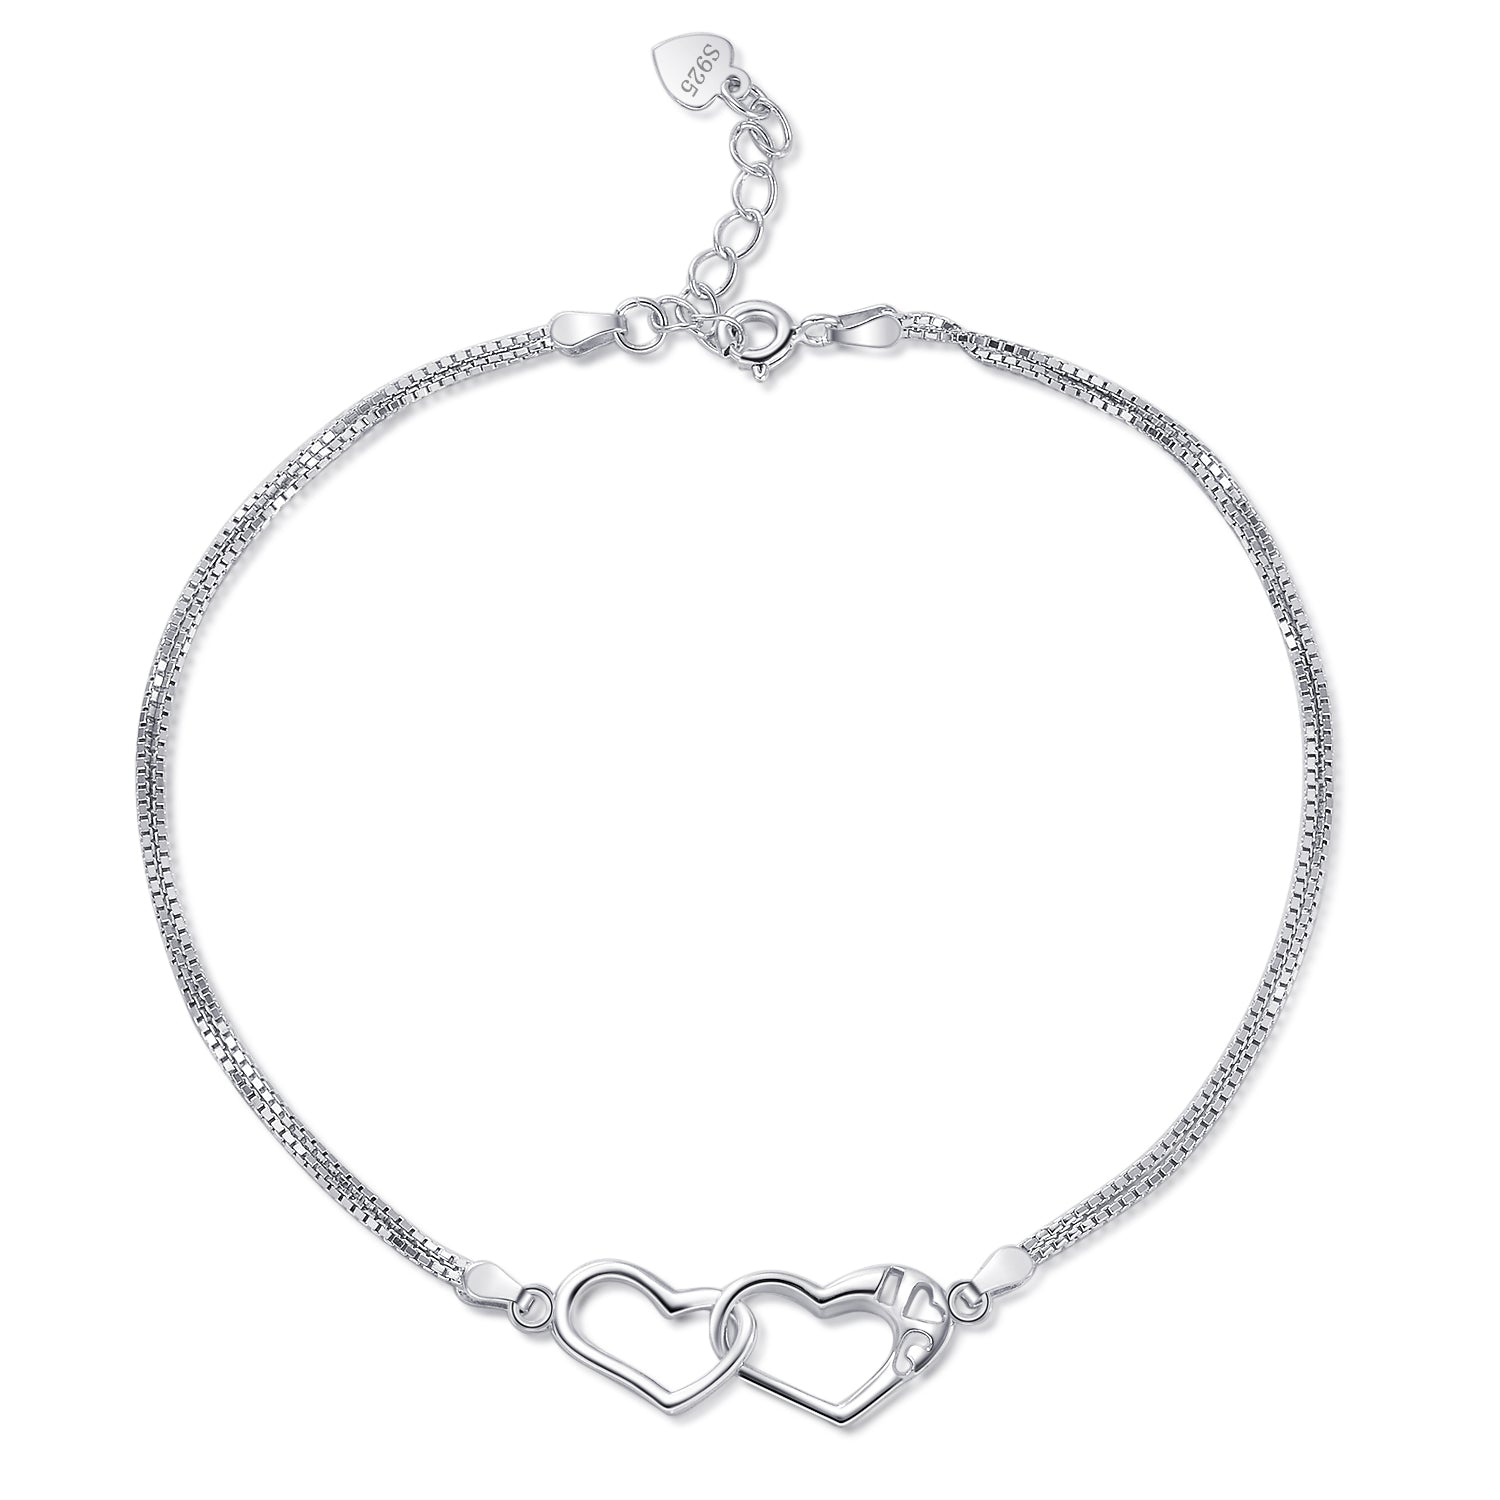 Two Double Heart Linked Bracelet Adjustable Chain Women Bracelet